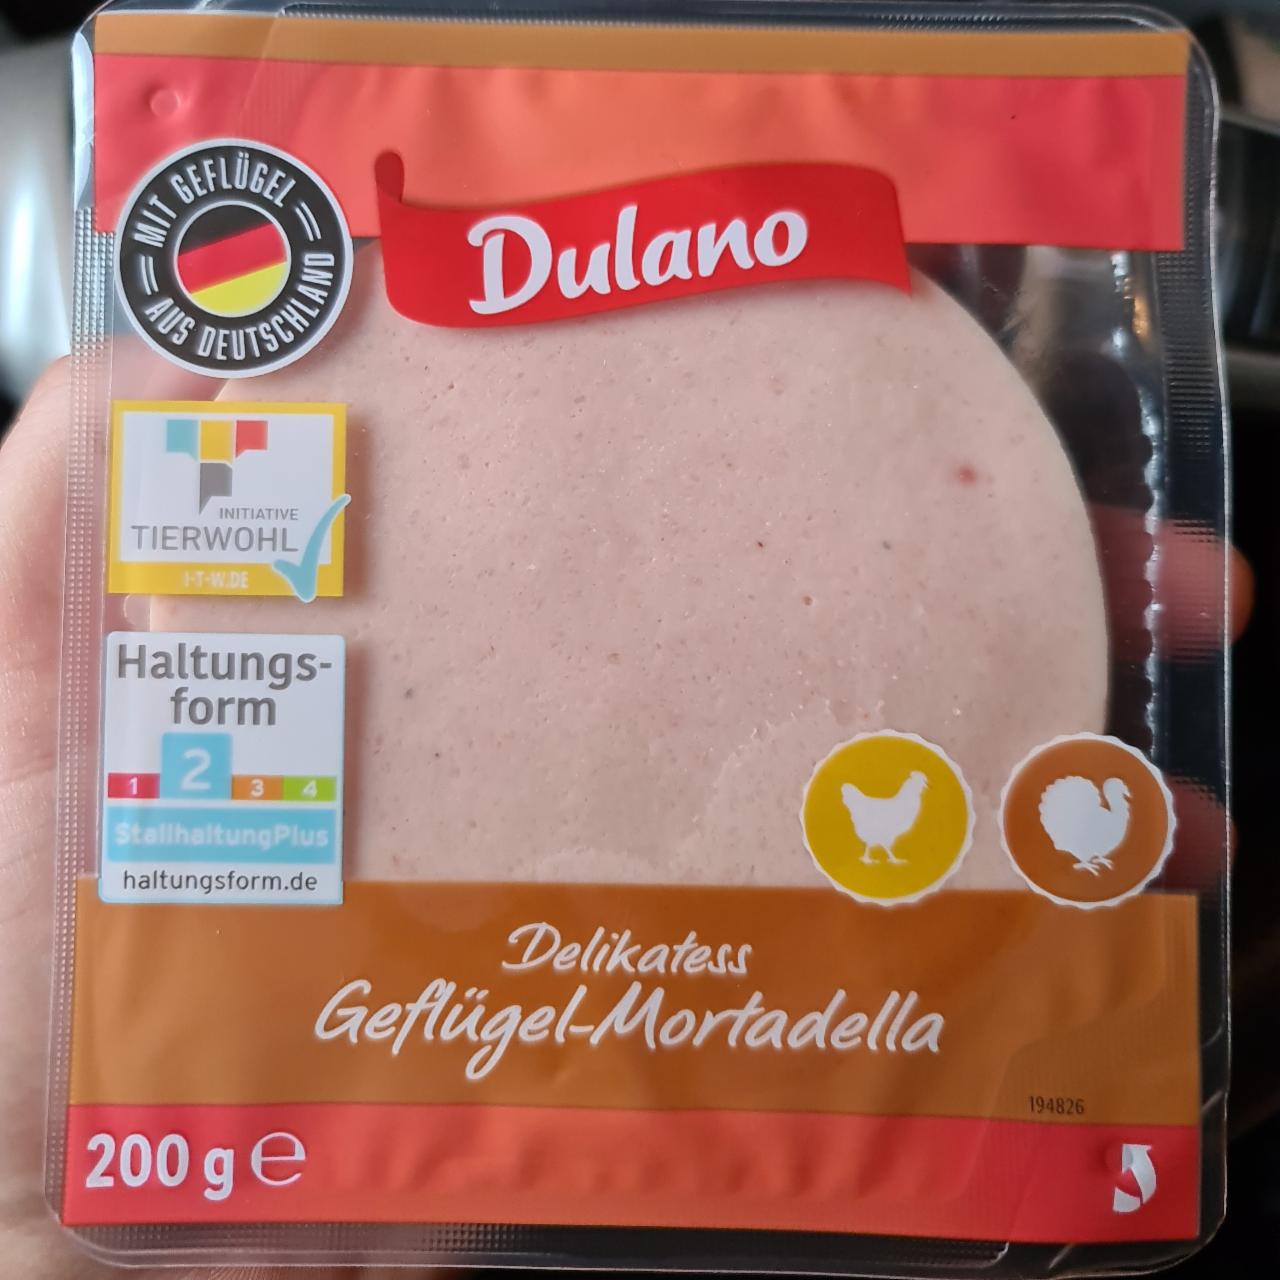 Delikatess Geflügel-Mortadella Dulano - kalórie, kJ a nutričné hodnoty